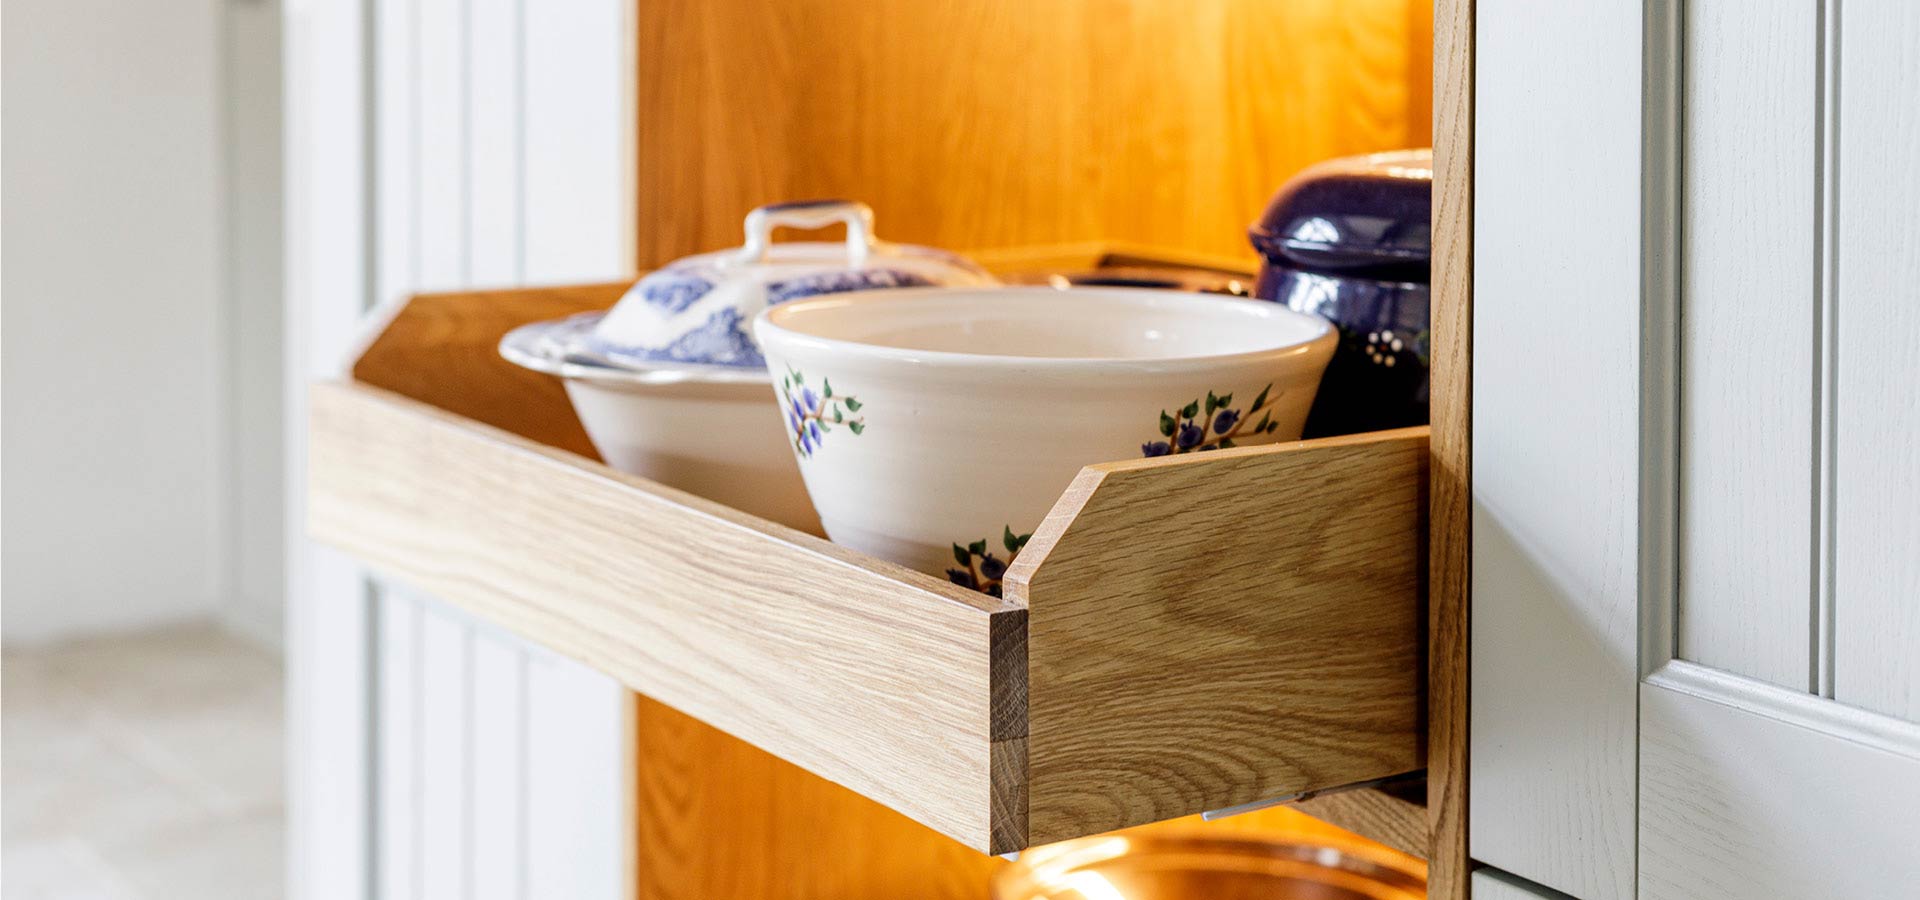 Kundenstimme Bewertung woodendesign aus Hamburg Landhausküche Details beleuchtete Schublade ausziehbar indirekte Beleuchtung Massivholz